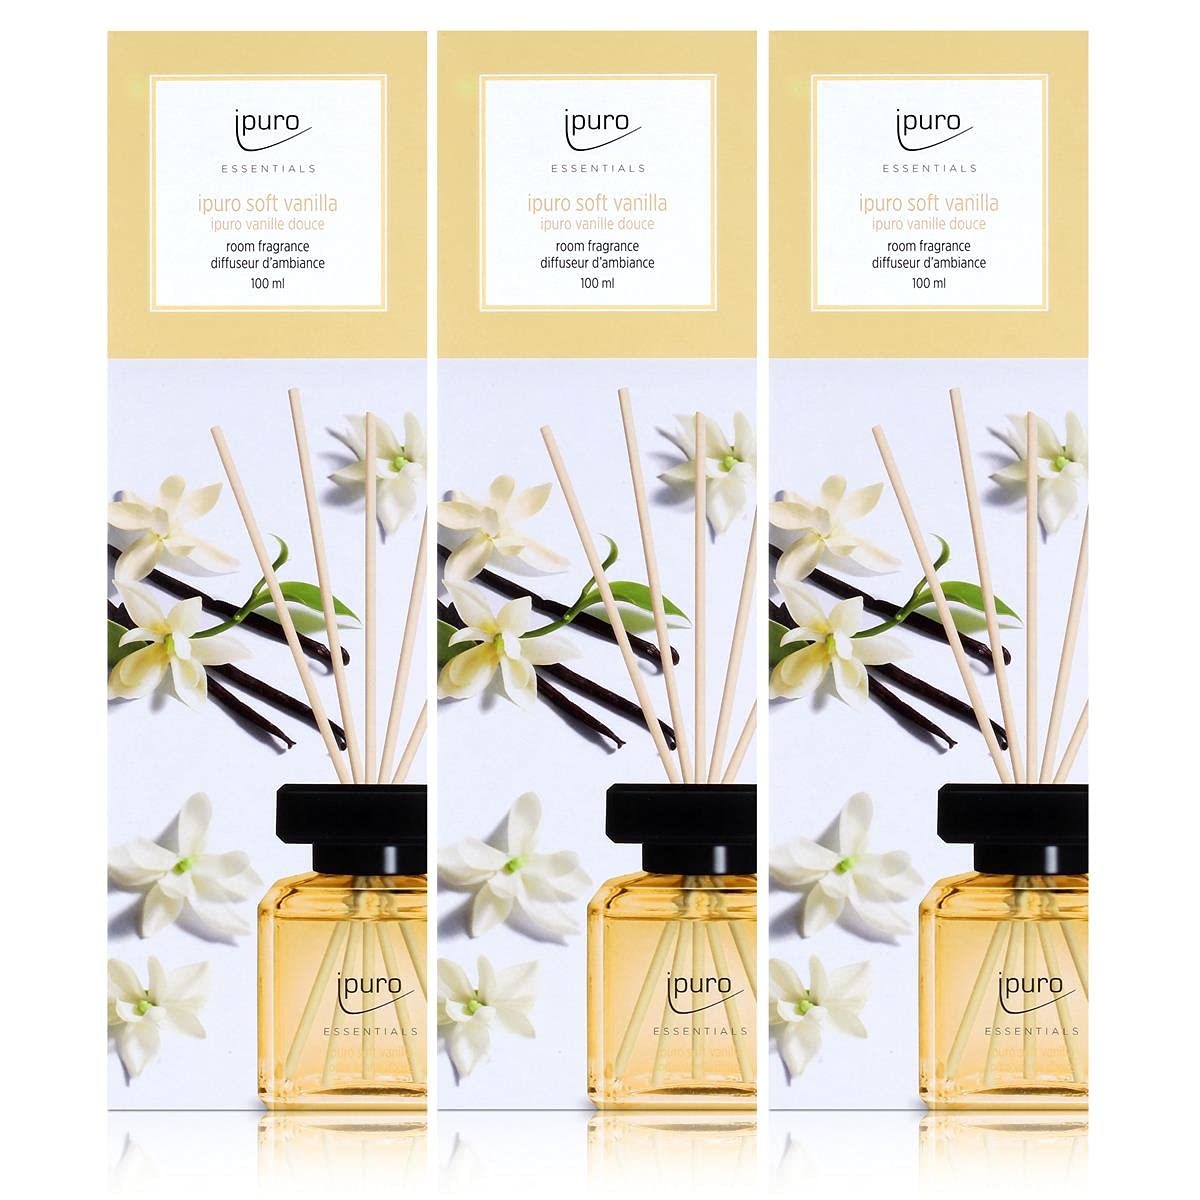 Essentials by Ipuro soft vanilla 100ml (3er Pack)